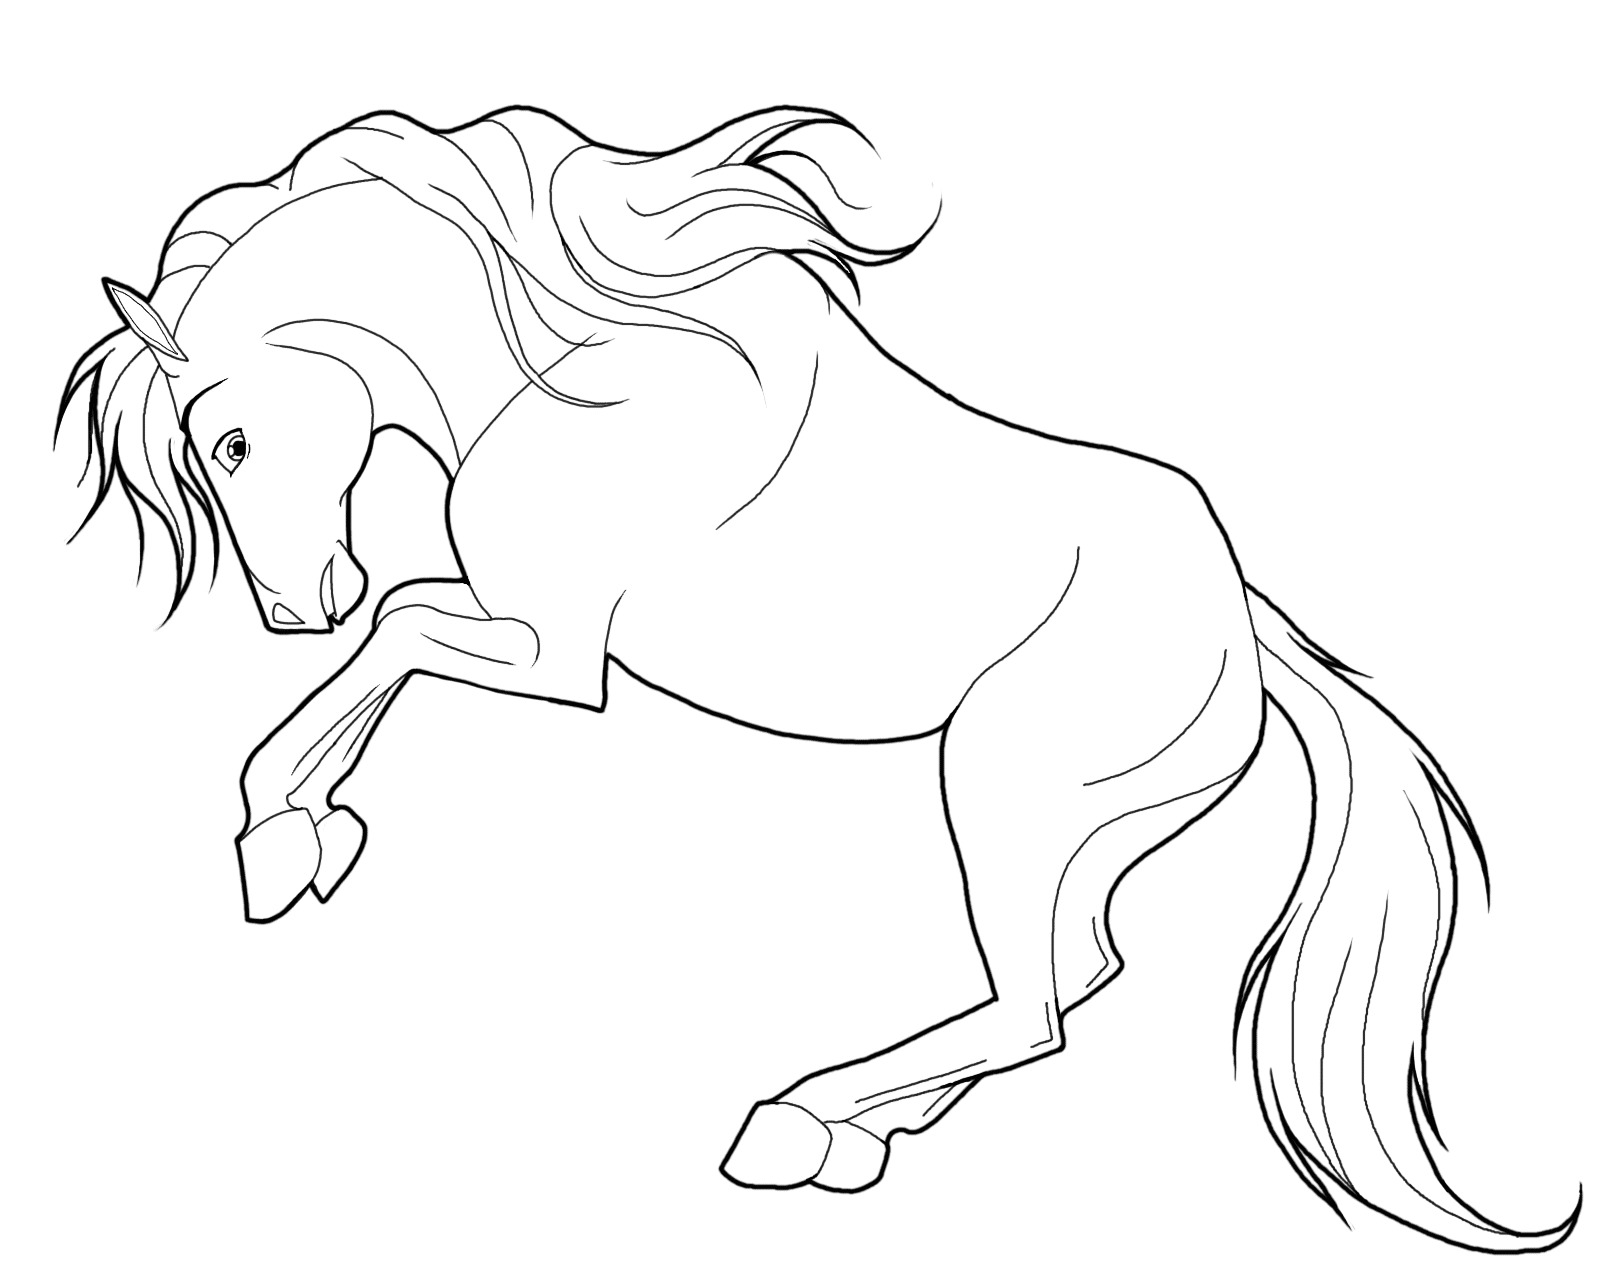 Hướng dẫn vẽ tranh ngựa Pony tô màu cho bé chi tiết nhất